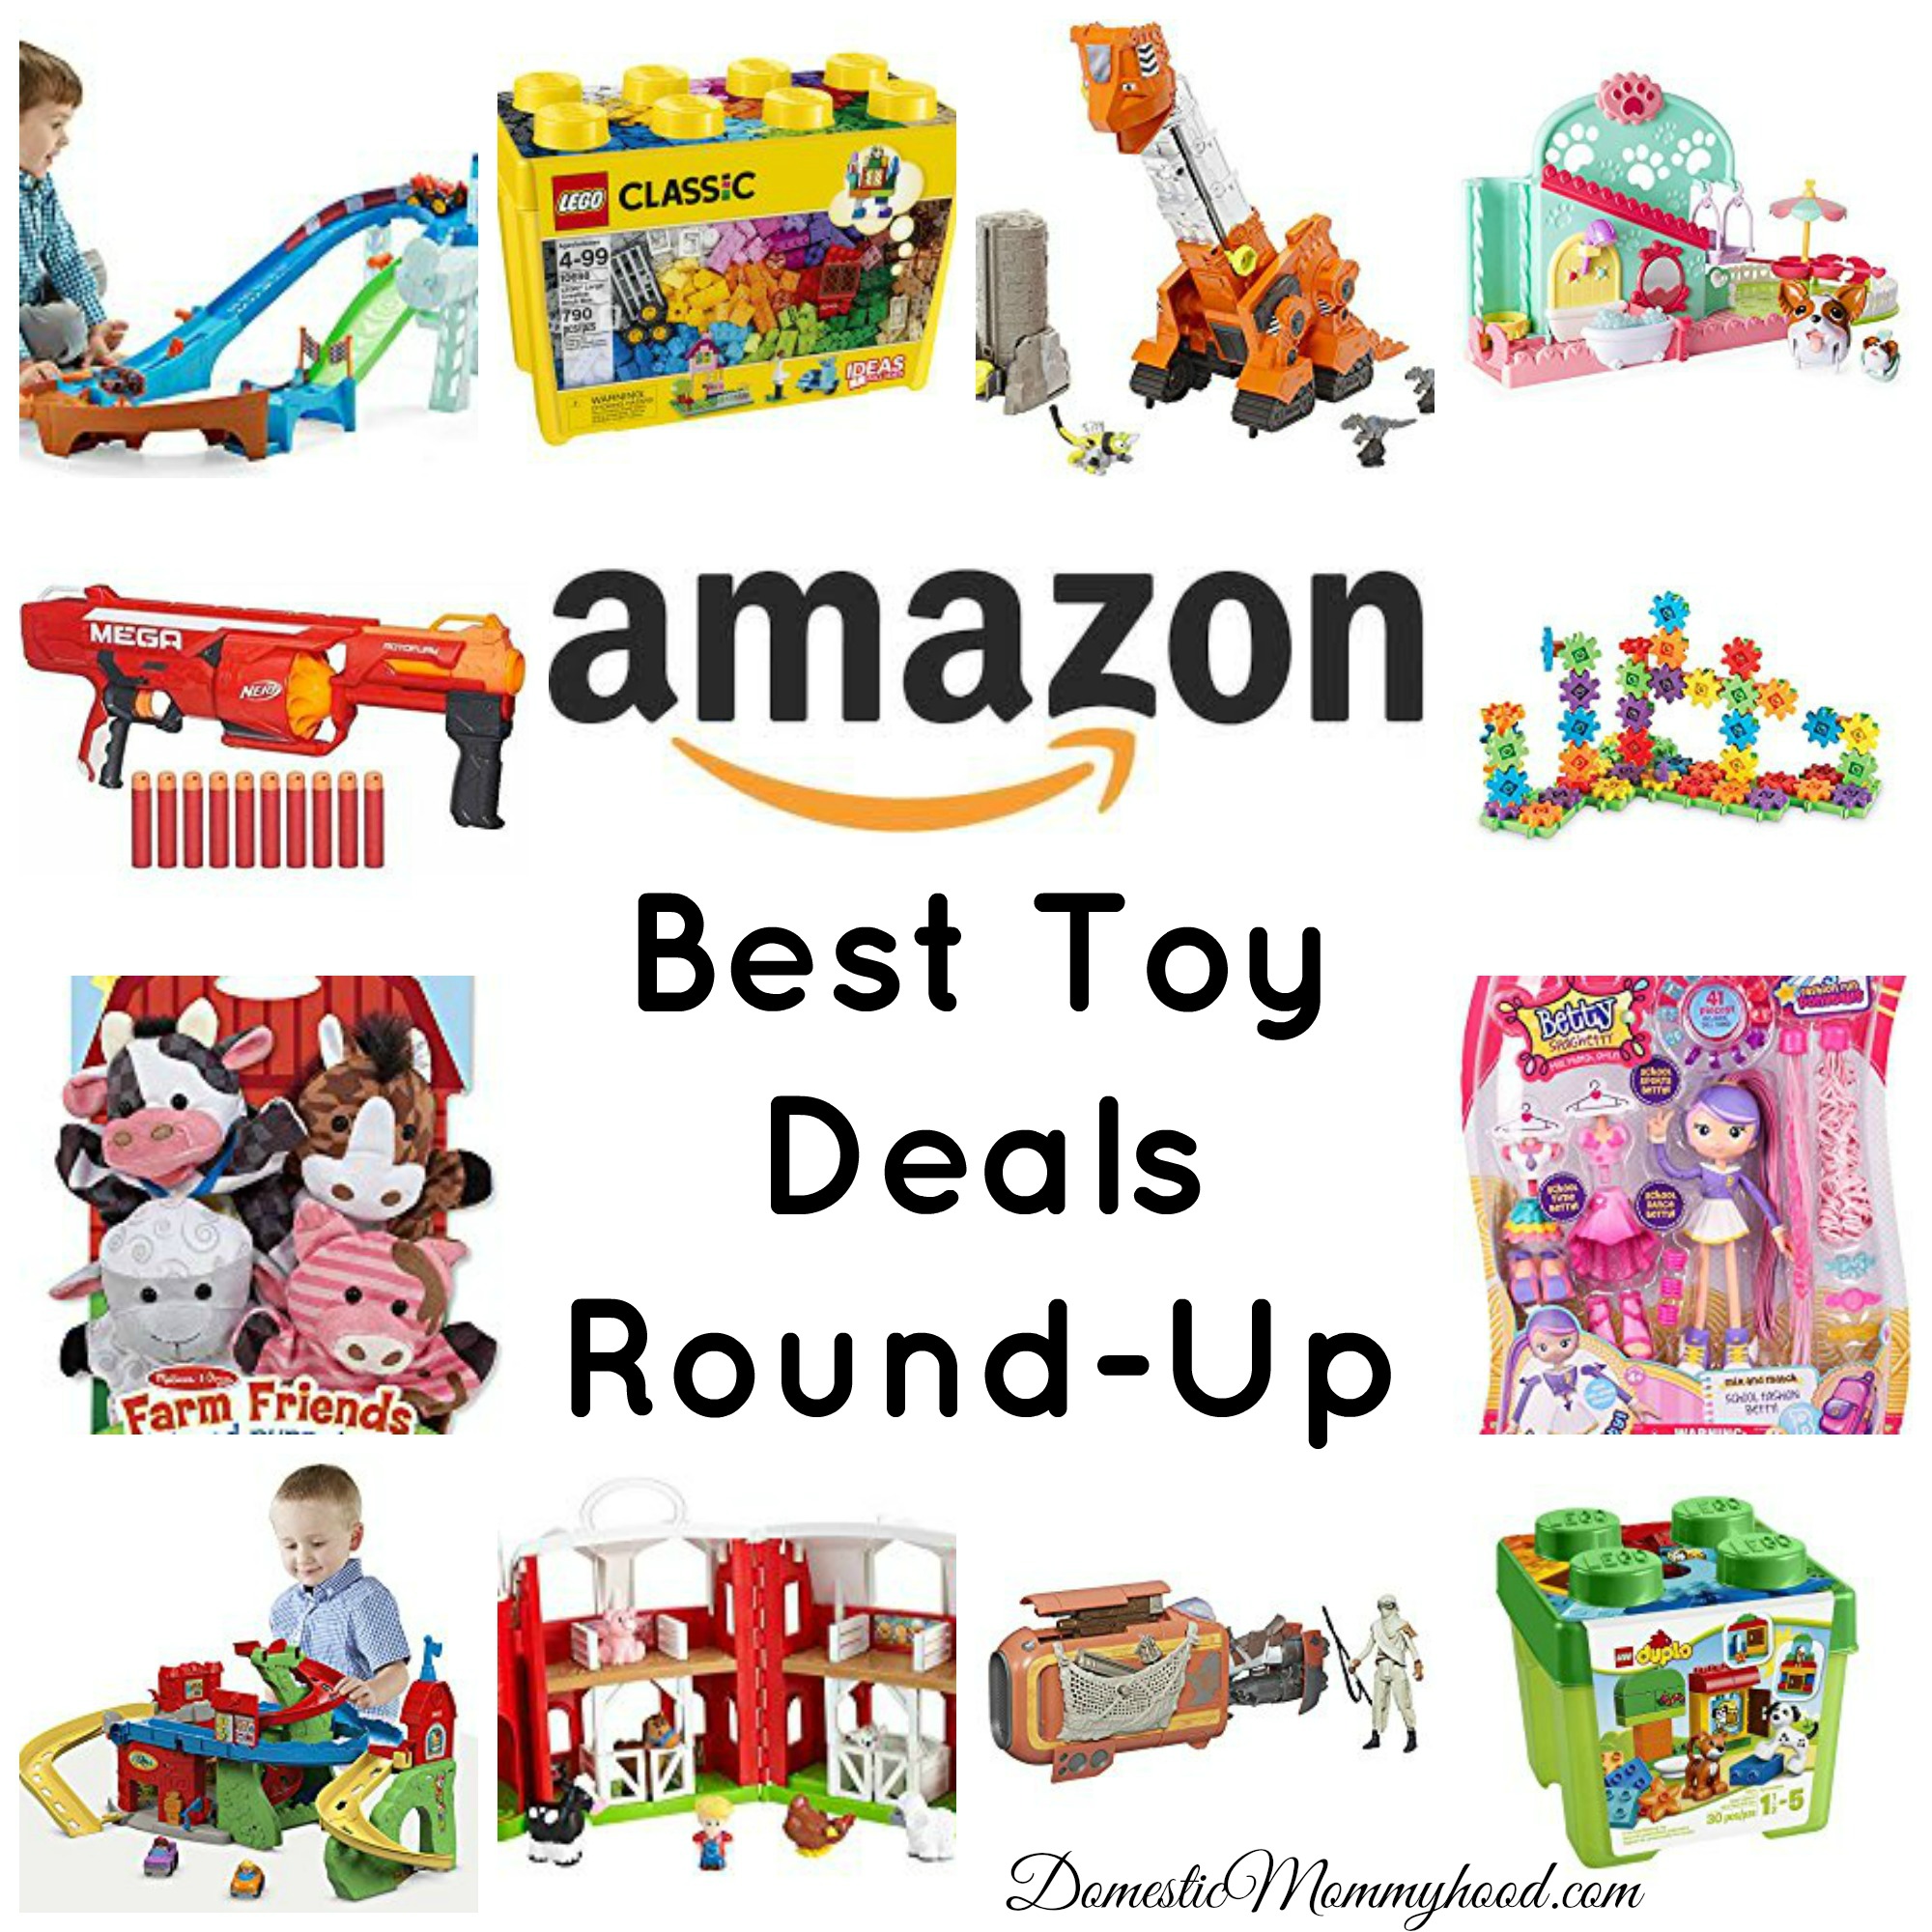 amazon best toy deals round-up